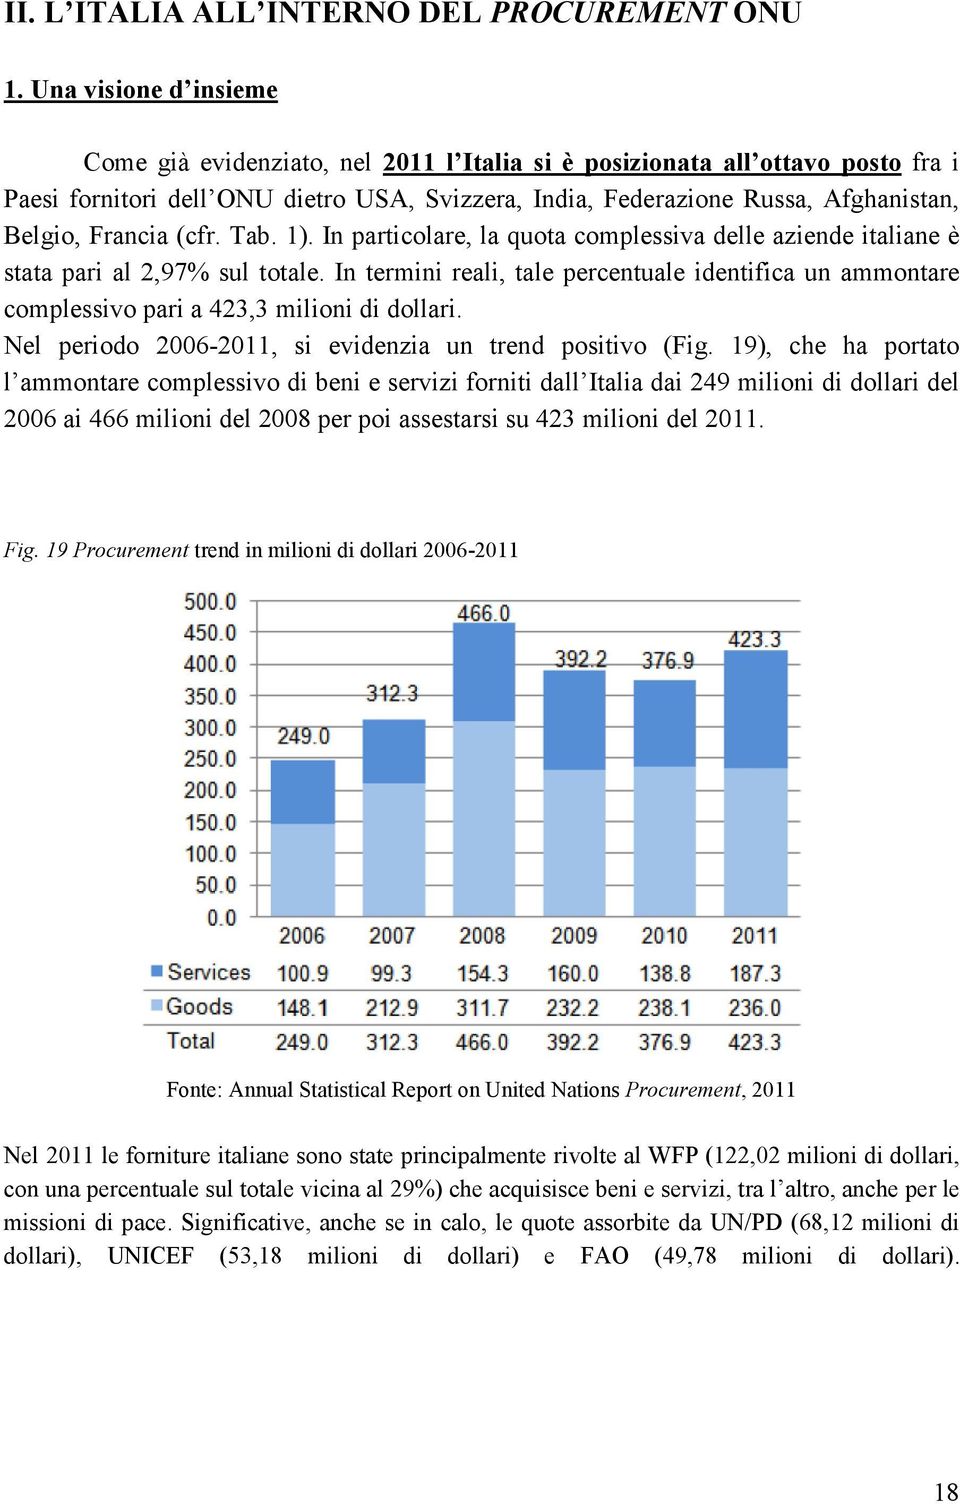 Francia (cfr. Tab. 1). In particolare, la quota complessiva delle aziende italiane è stata pari al 2,97% sul totale.